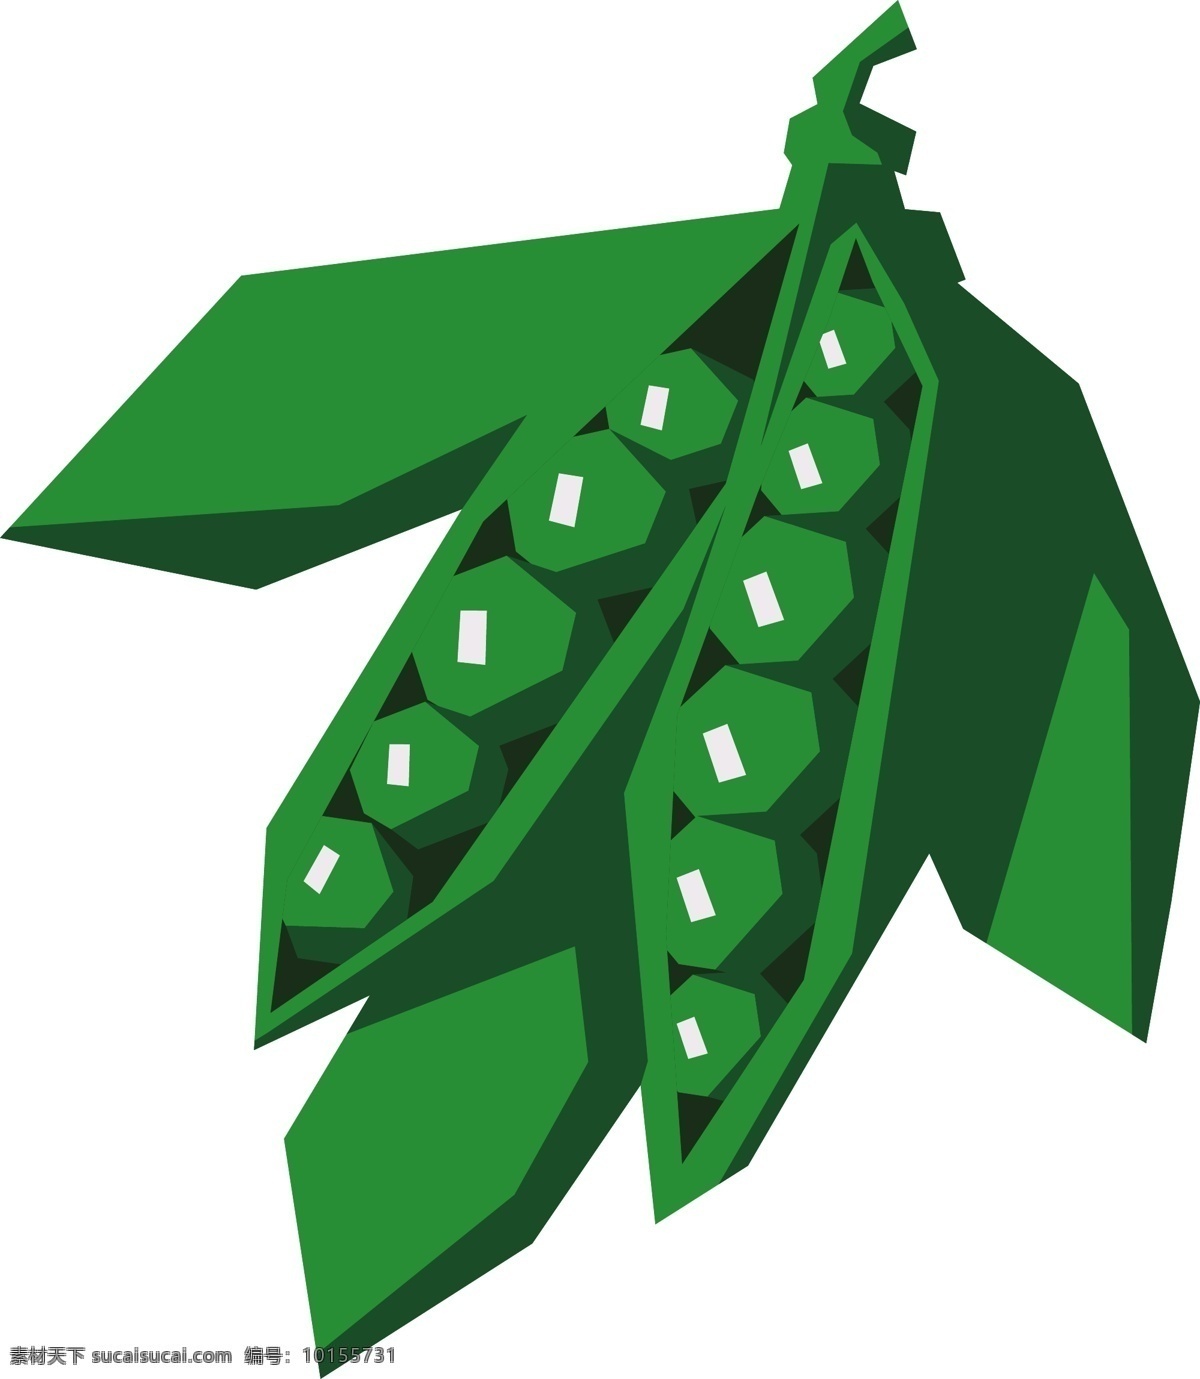 卡通 几何 豌豆 商用 元素 植物 矢量